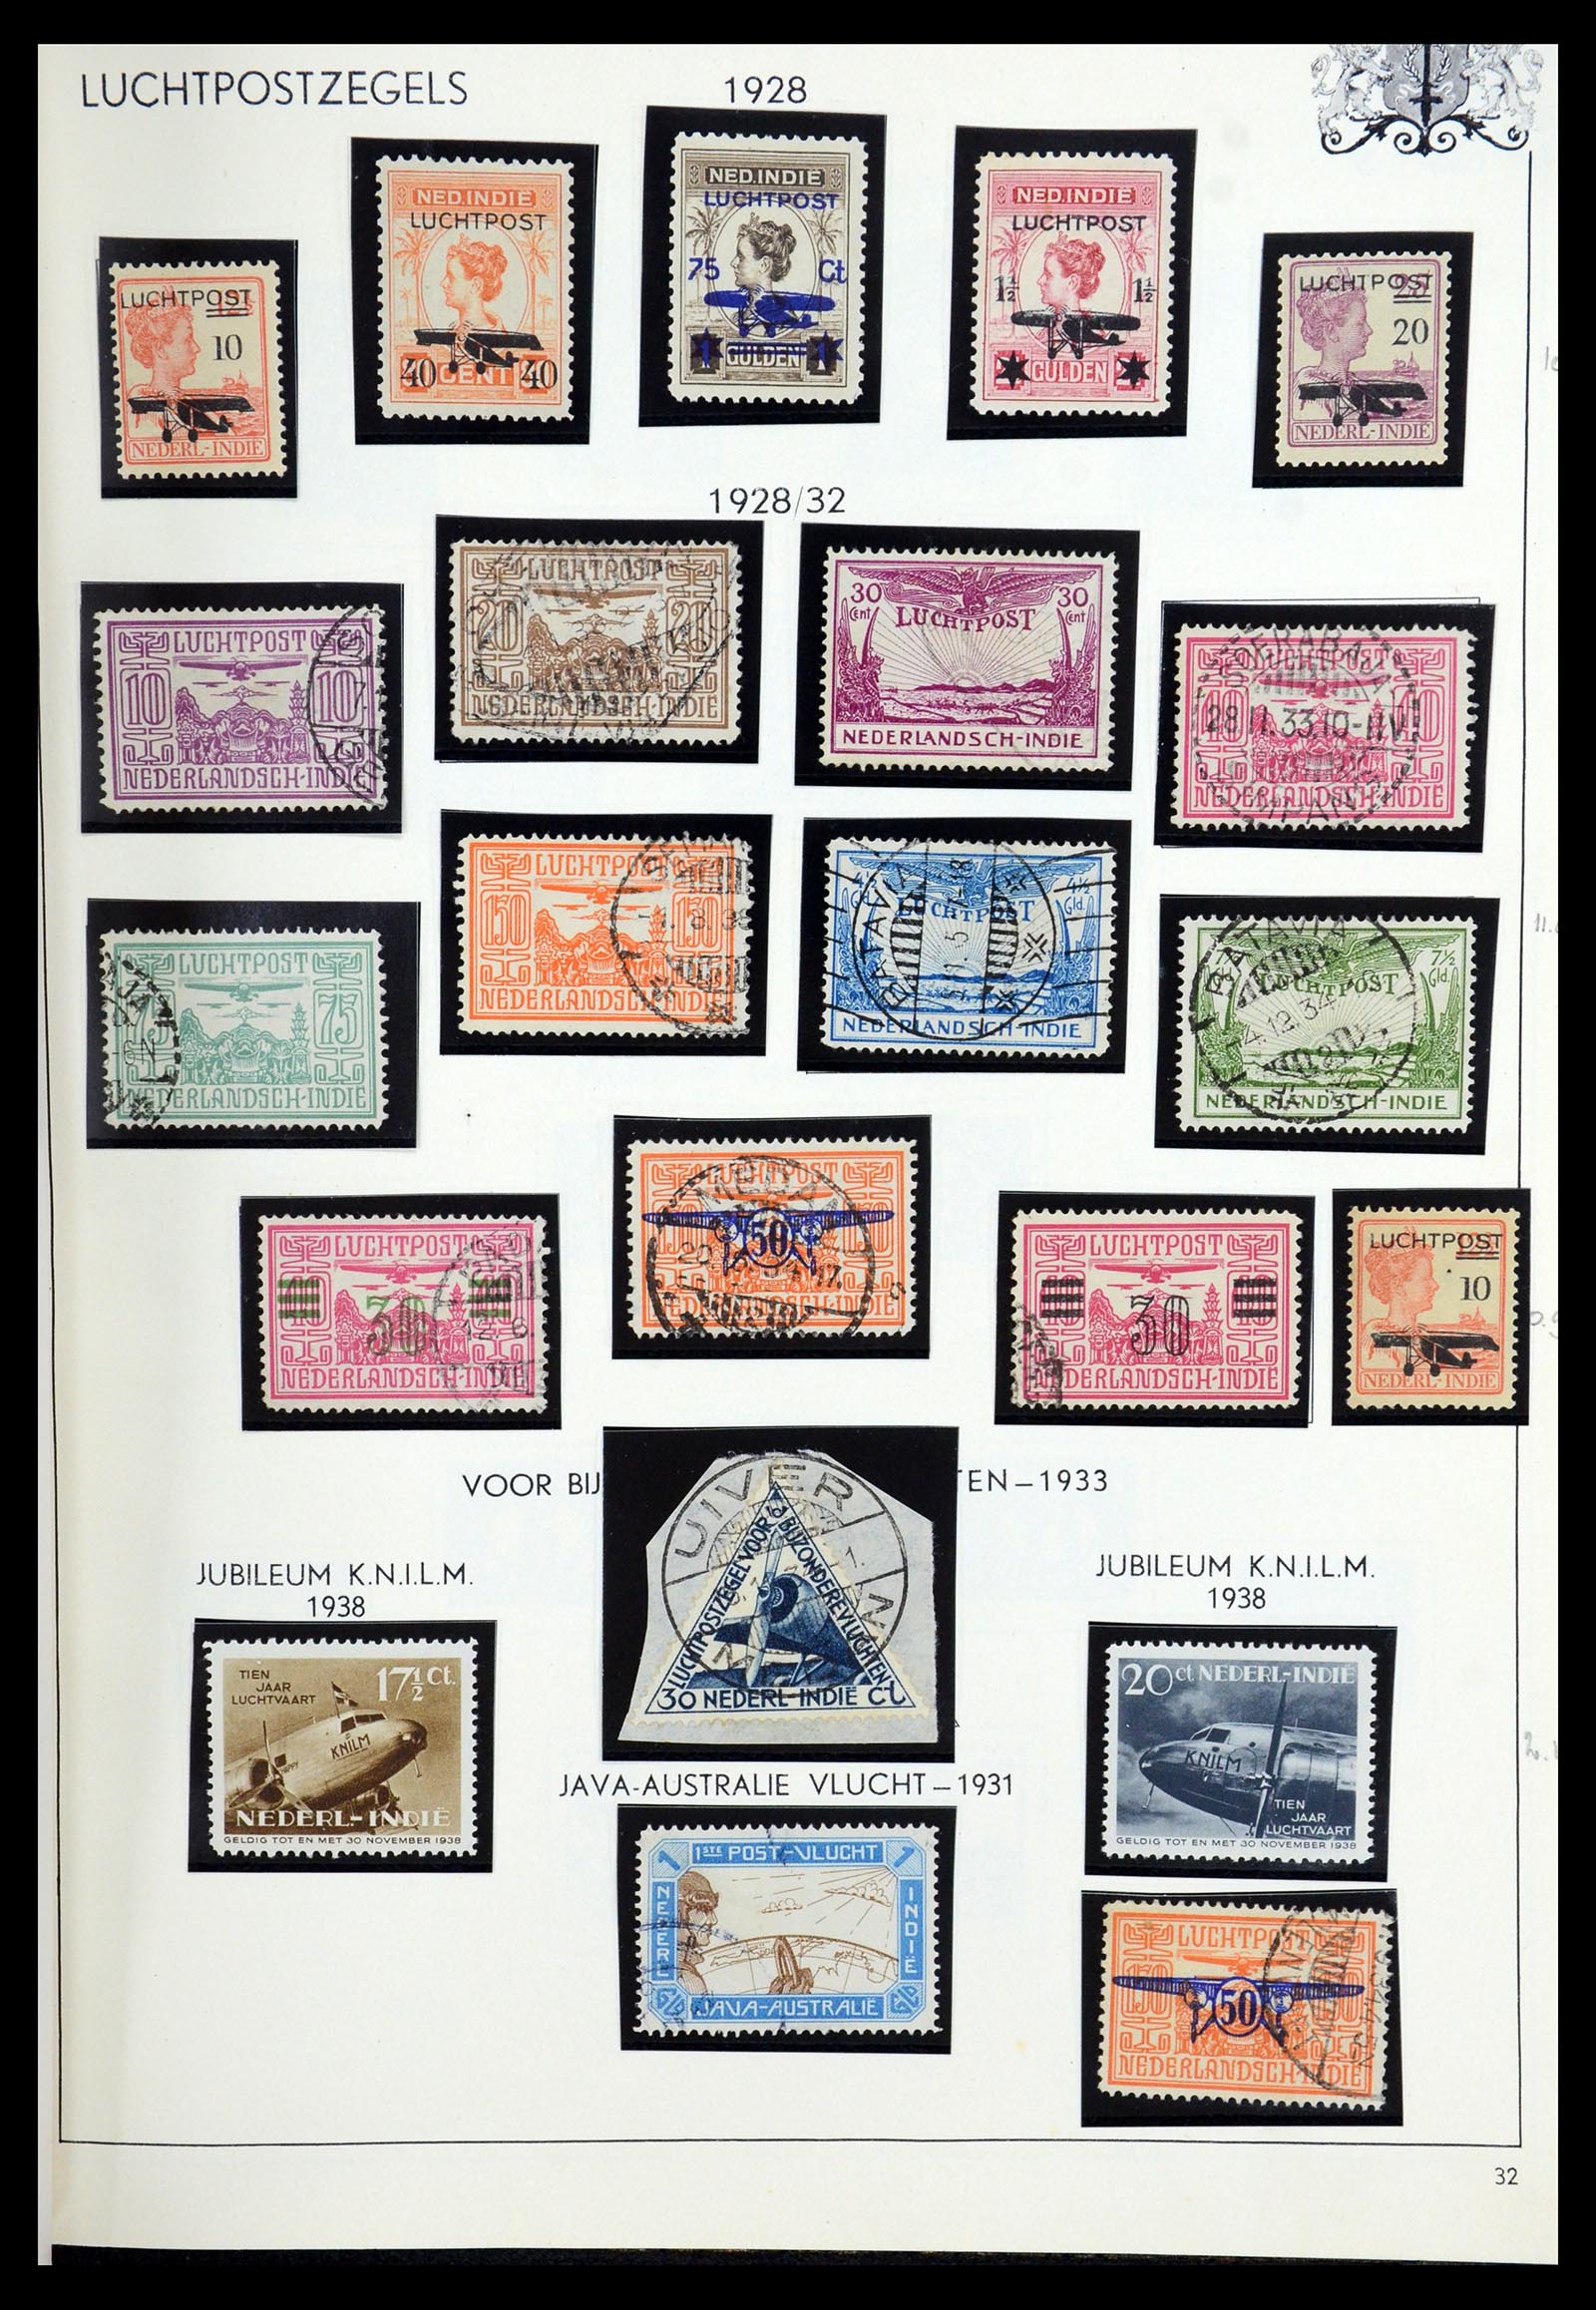 35940 035 - Postzegelverzameling 35940 Nederland en overzeese gebiedsdelen 1852-1